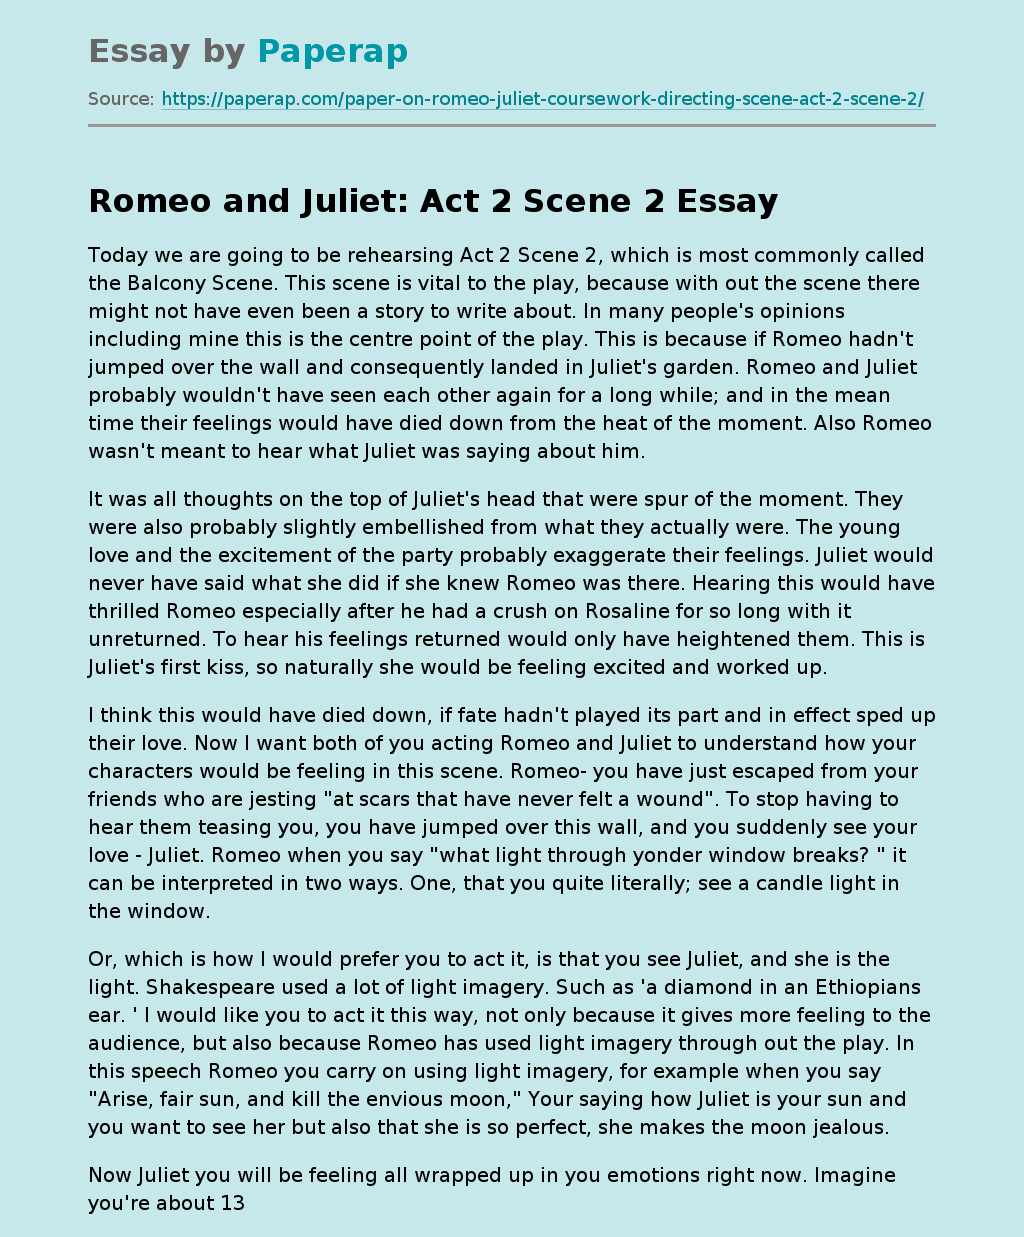 Romeo and Juliet: Act 2 Scene 2